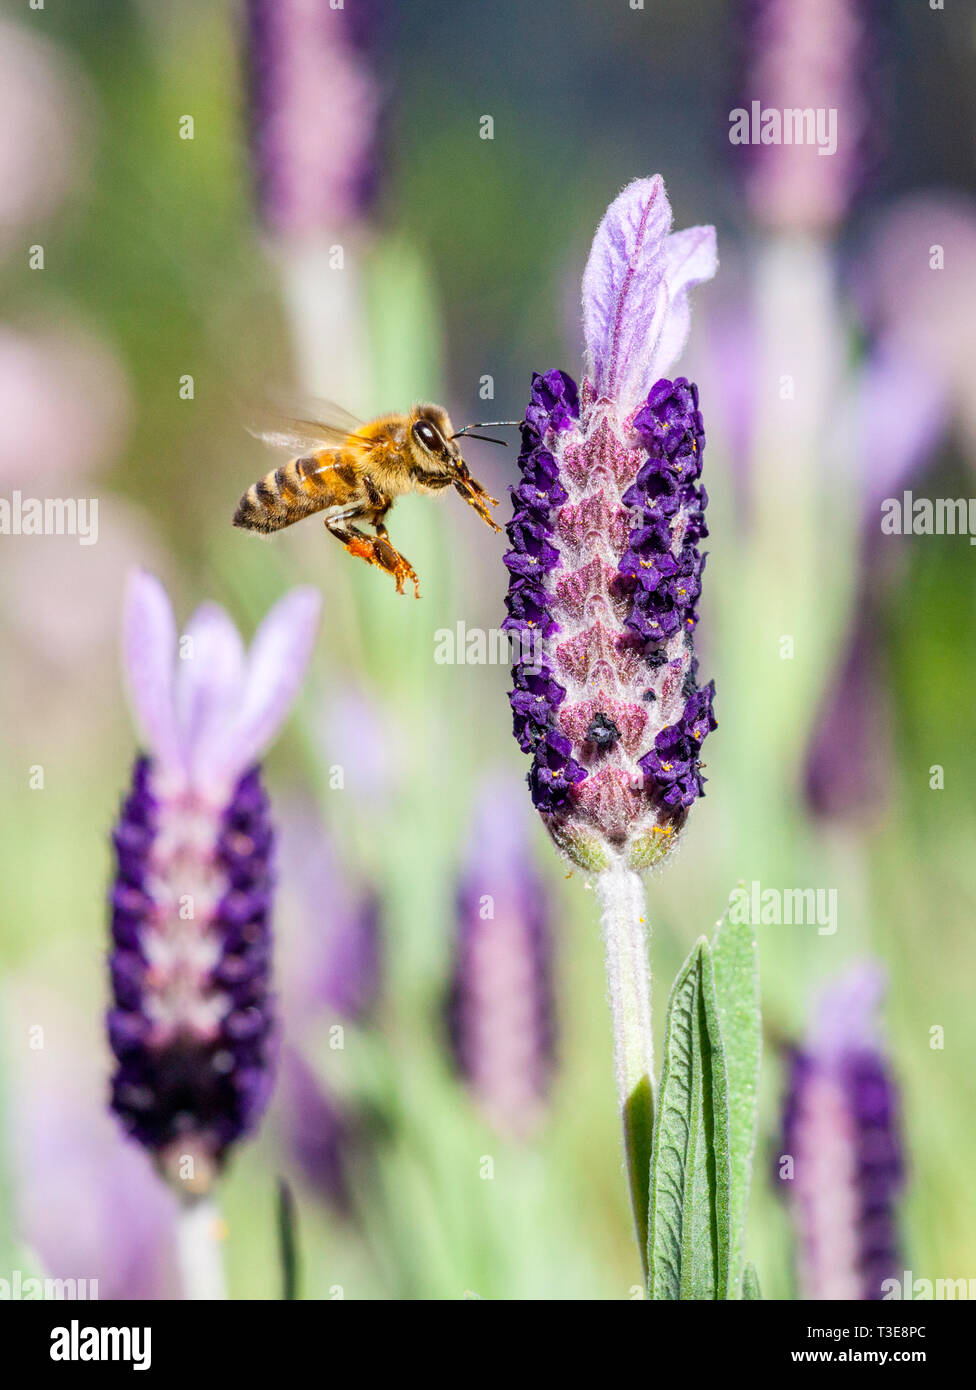 Abeja de Miel europea ( Apis mellifera ) volando hacia una flor de lavanda francesa. También conocida como La Abeja de Miel occidental. Foto de stock